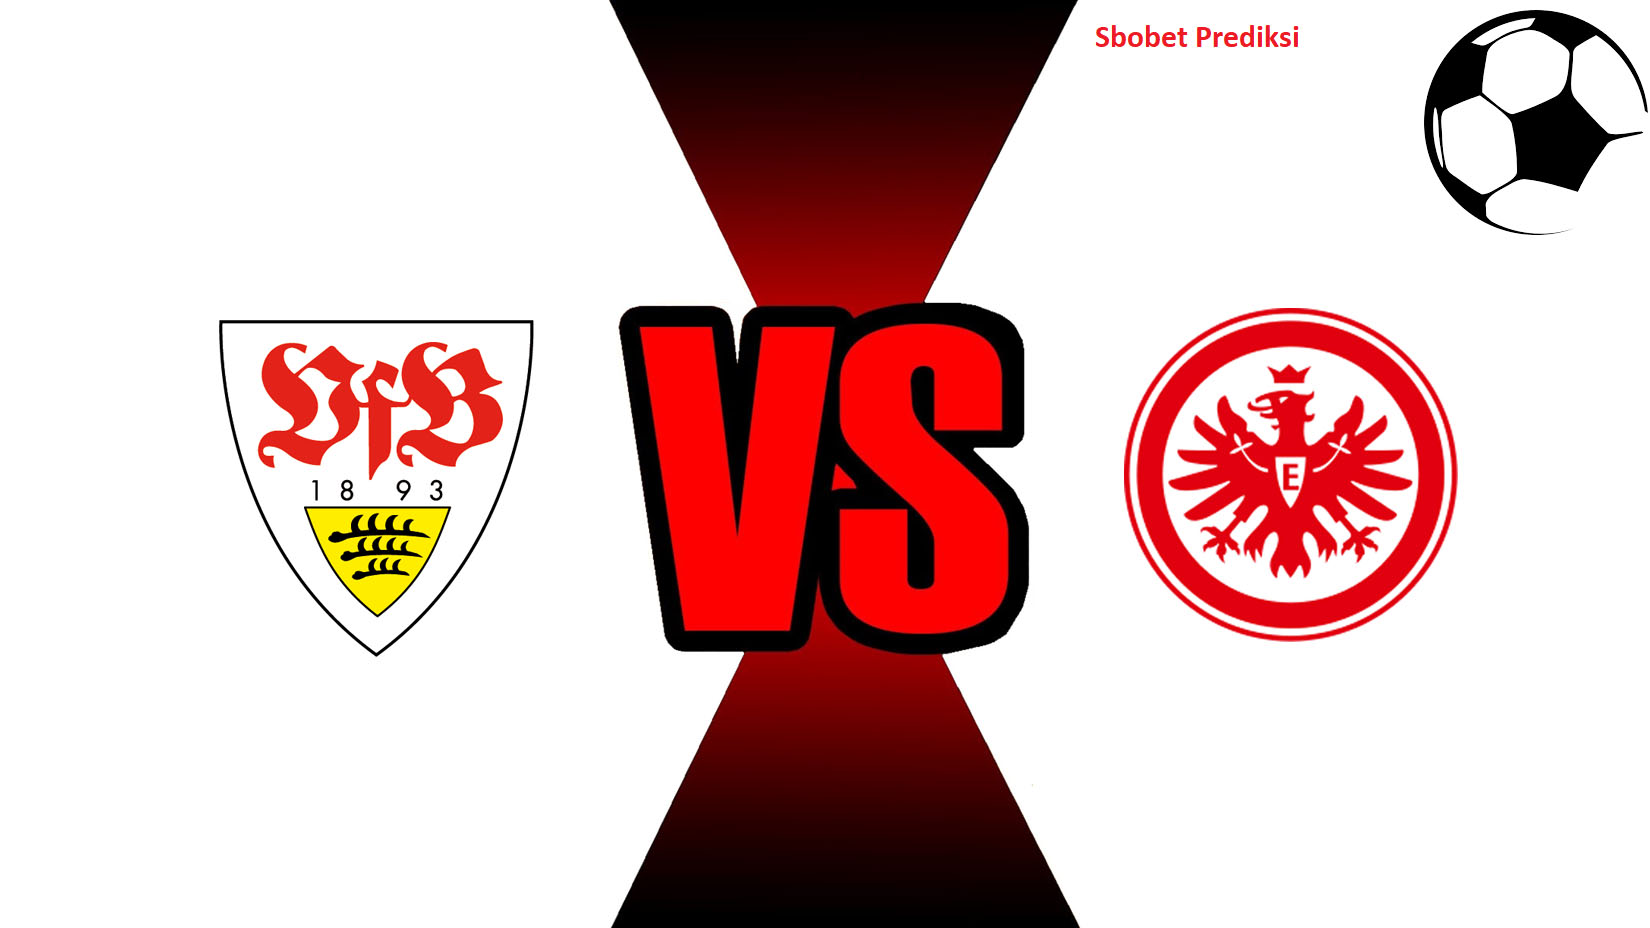 Prediksi Skor Bola Online Stuttgart vs Frankfurt 3 November 2018